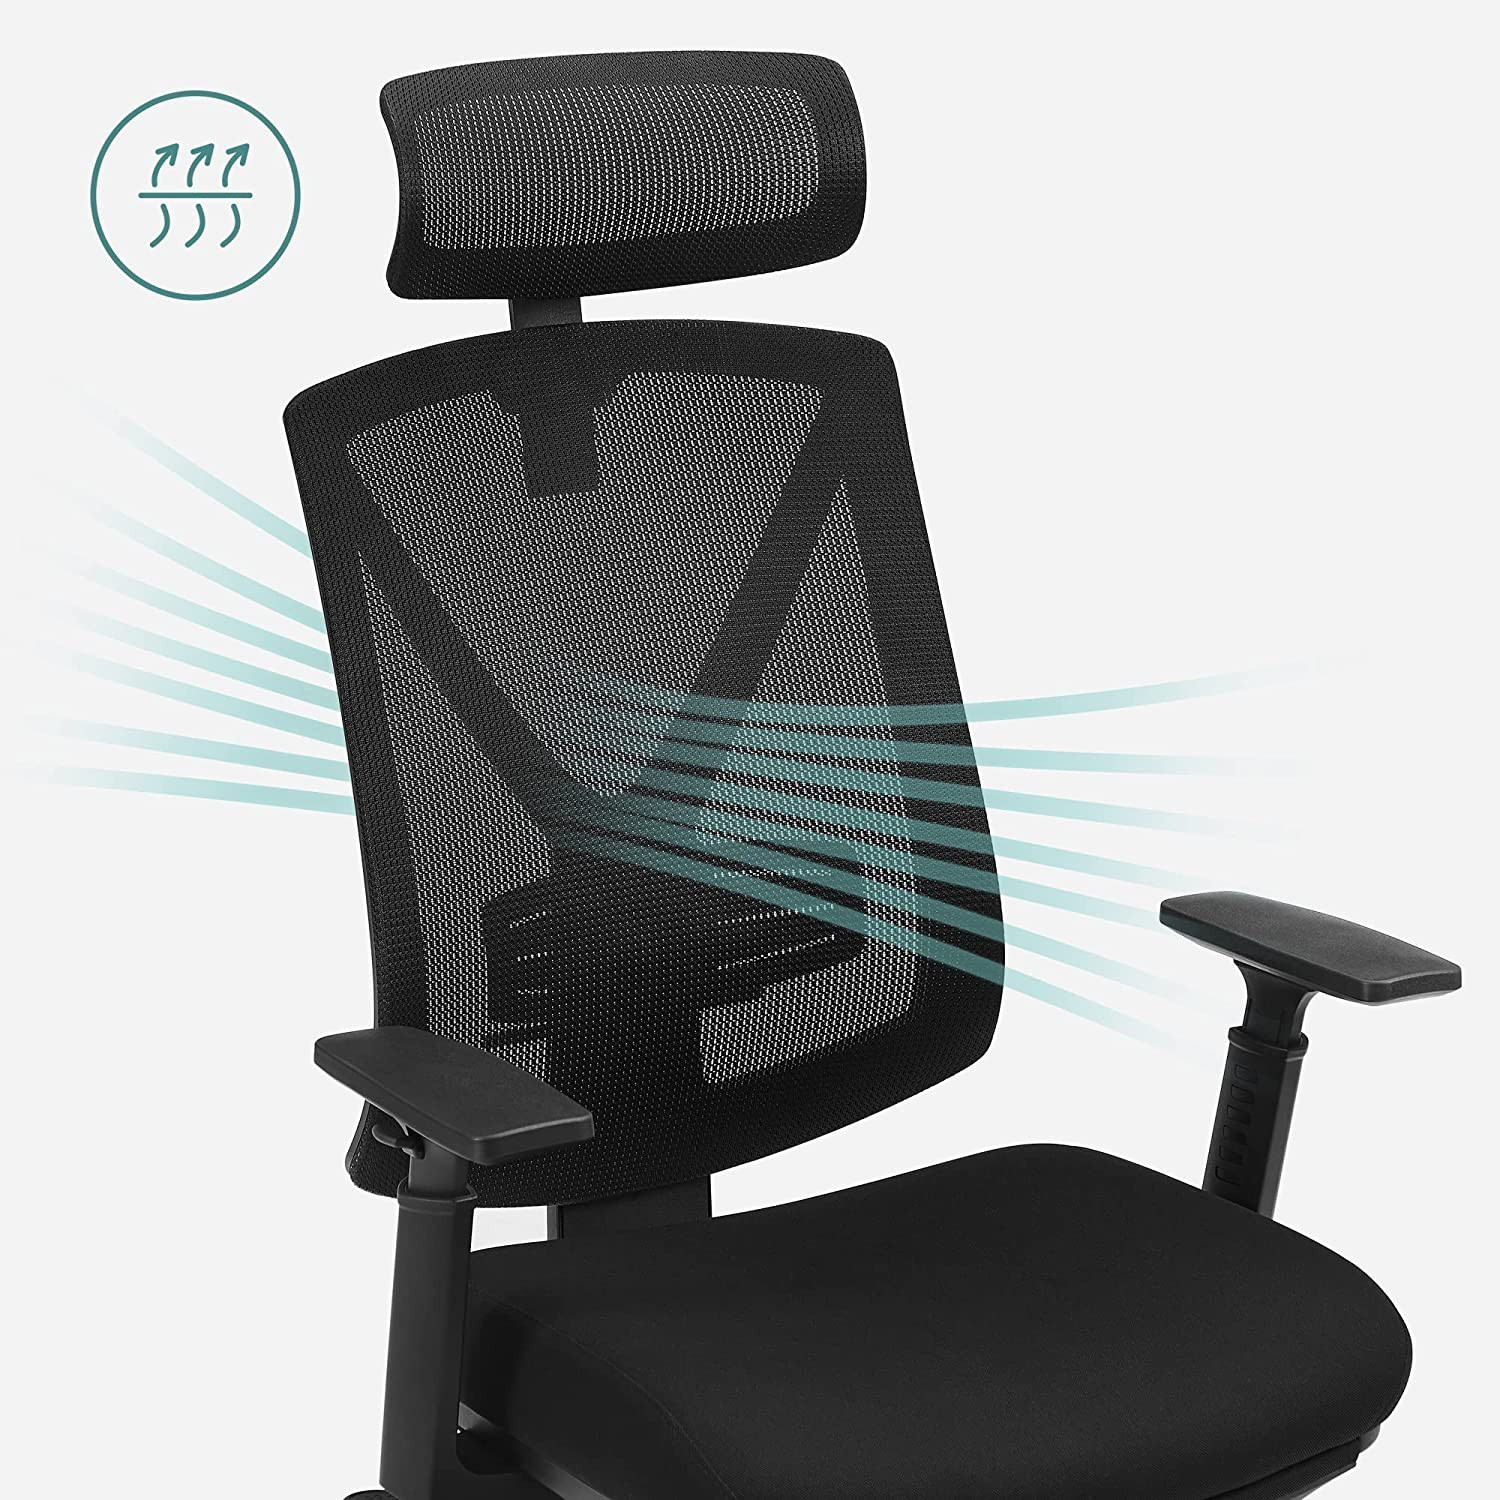 Kancelárska stolička OBN61BKV1